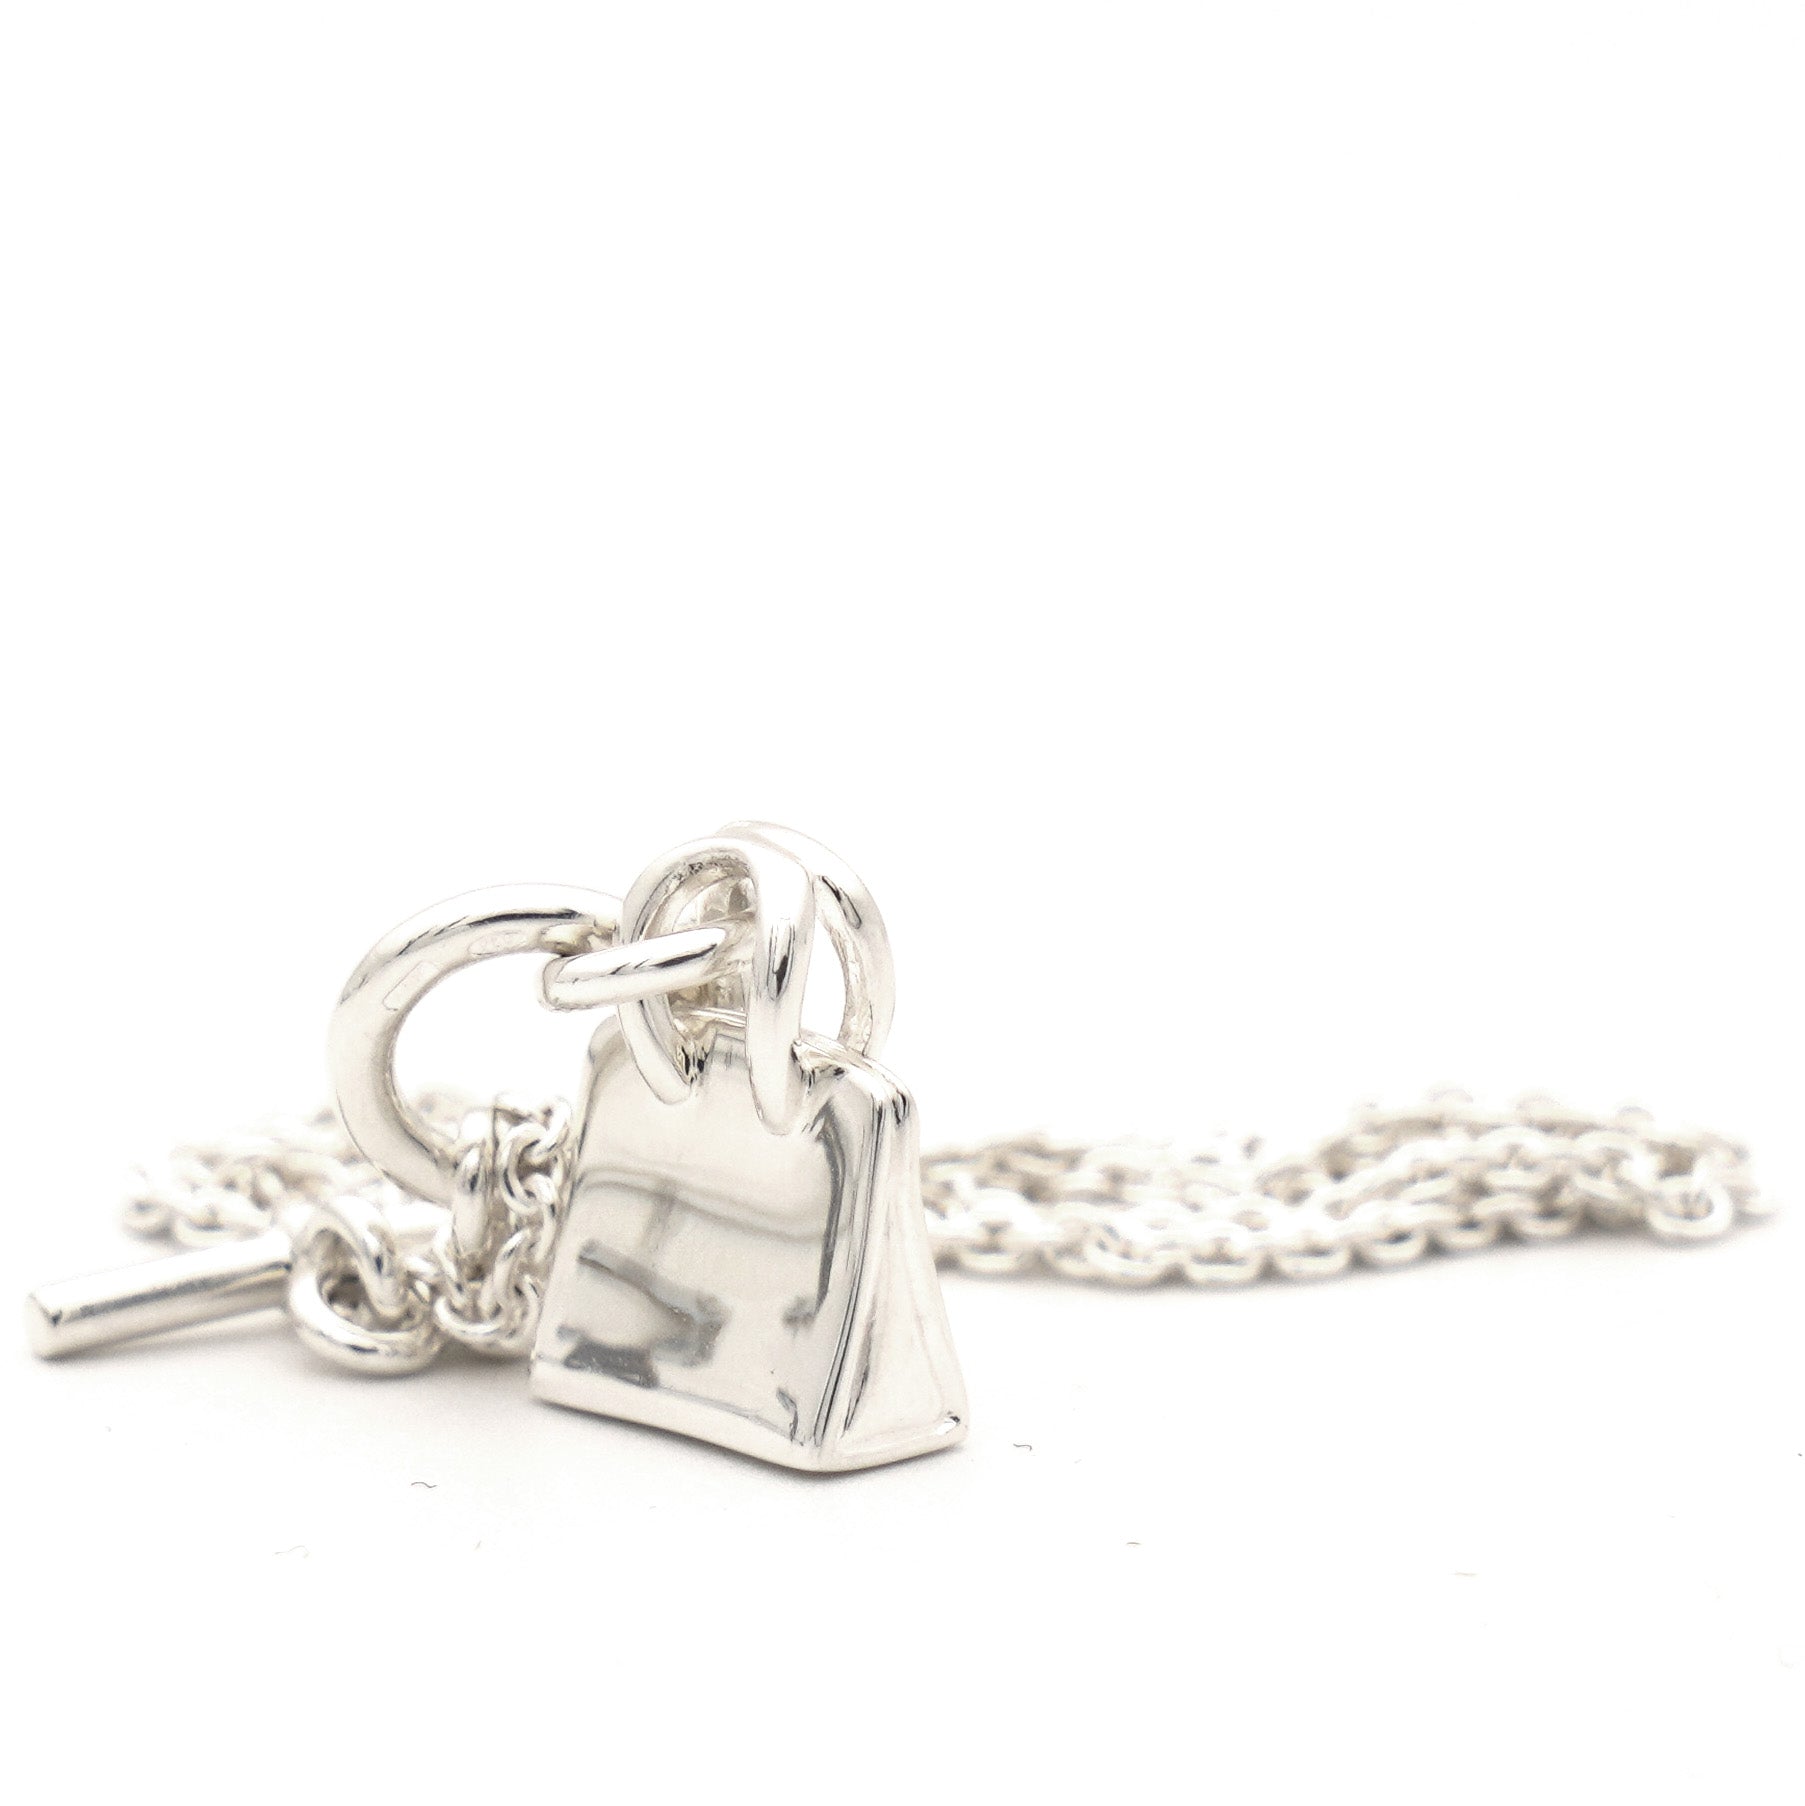 Amulette Silver Pendant Necklace